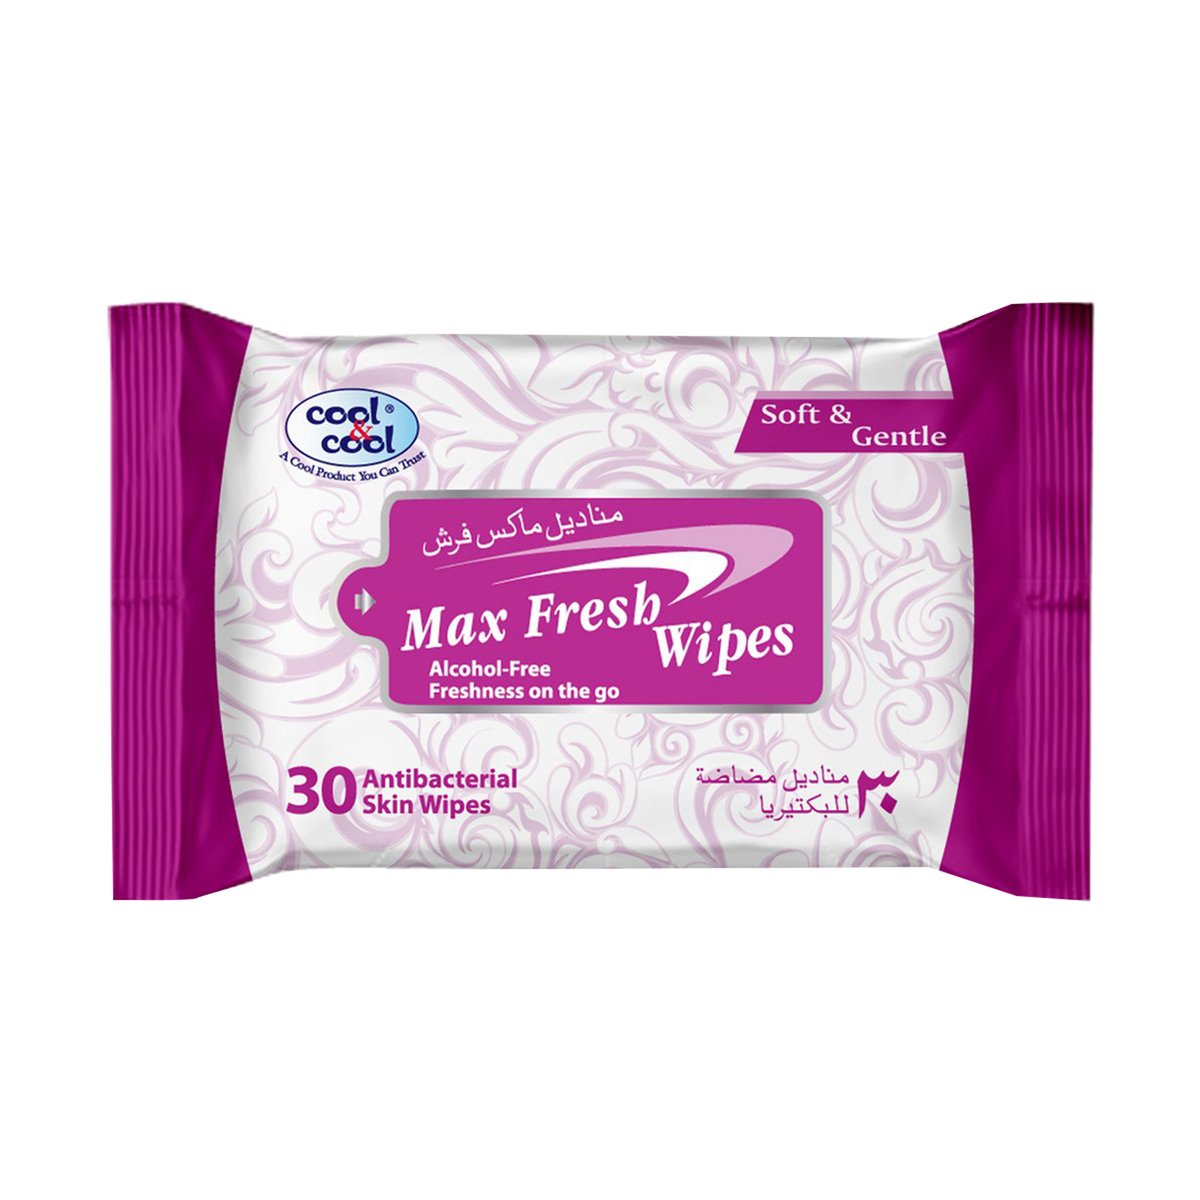 Cool & Cool Max Fresh Antibacterial Skin Wipes 30 pcs